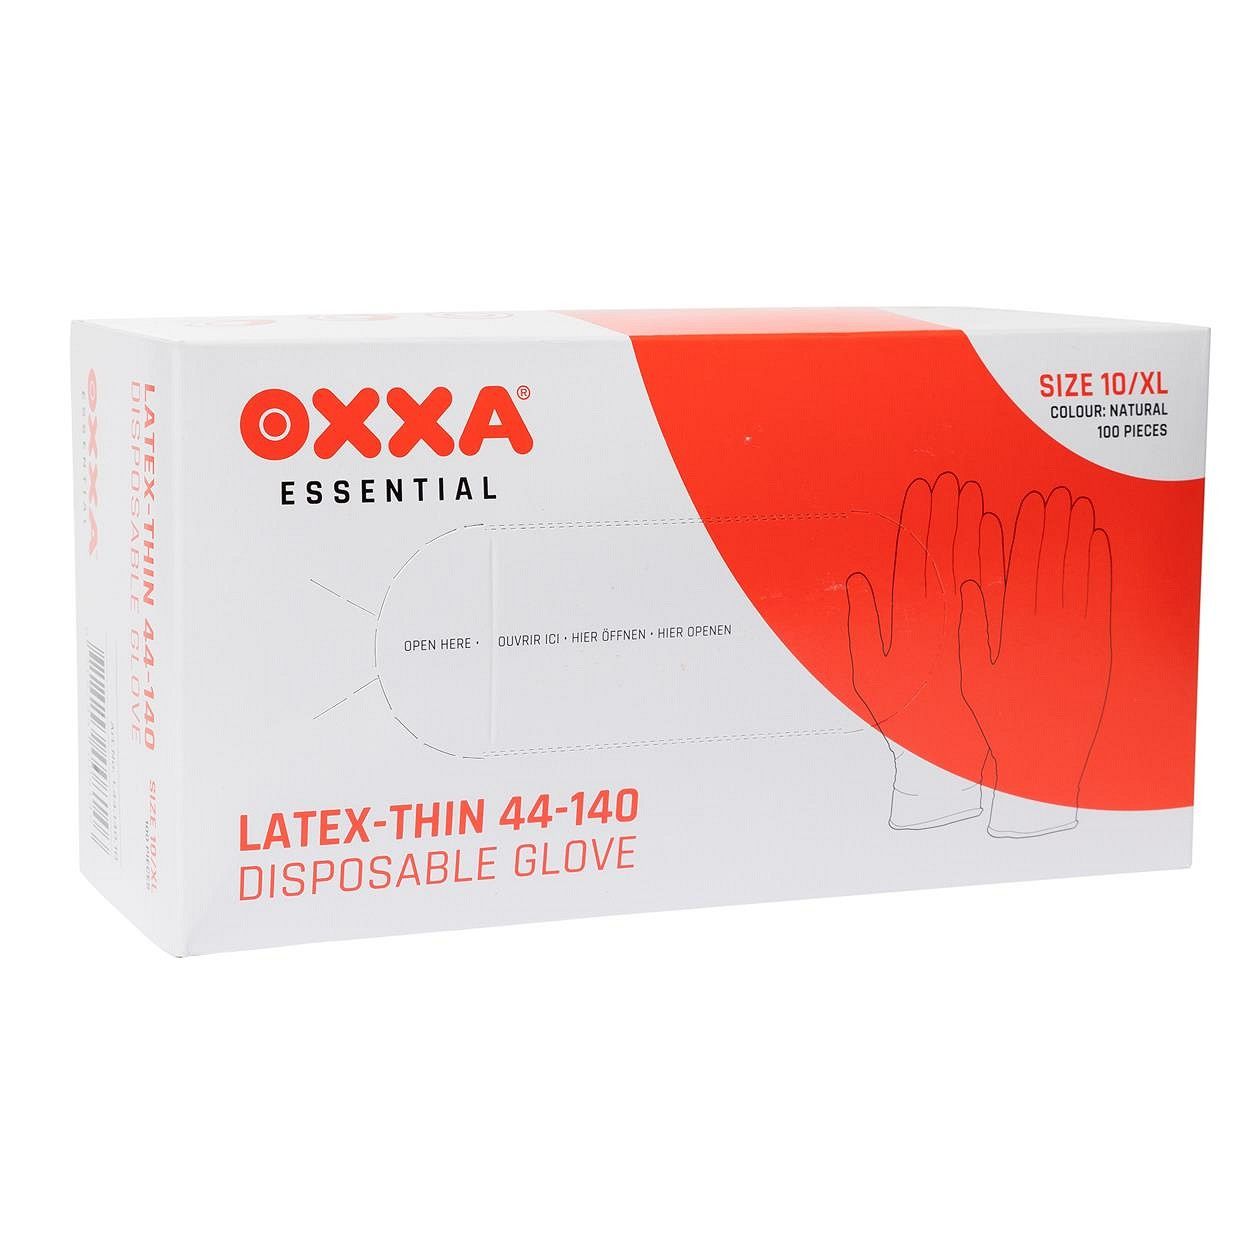 OXXA Latex-Thin 44-140 werkhandschoenen